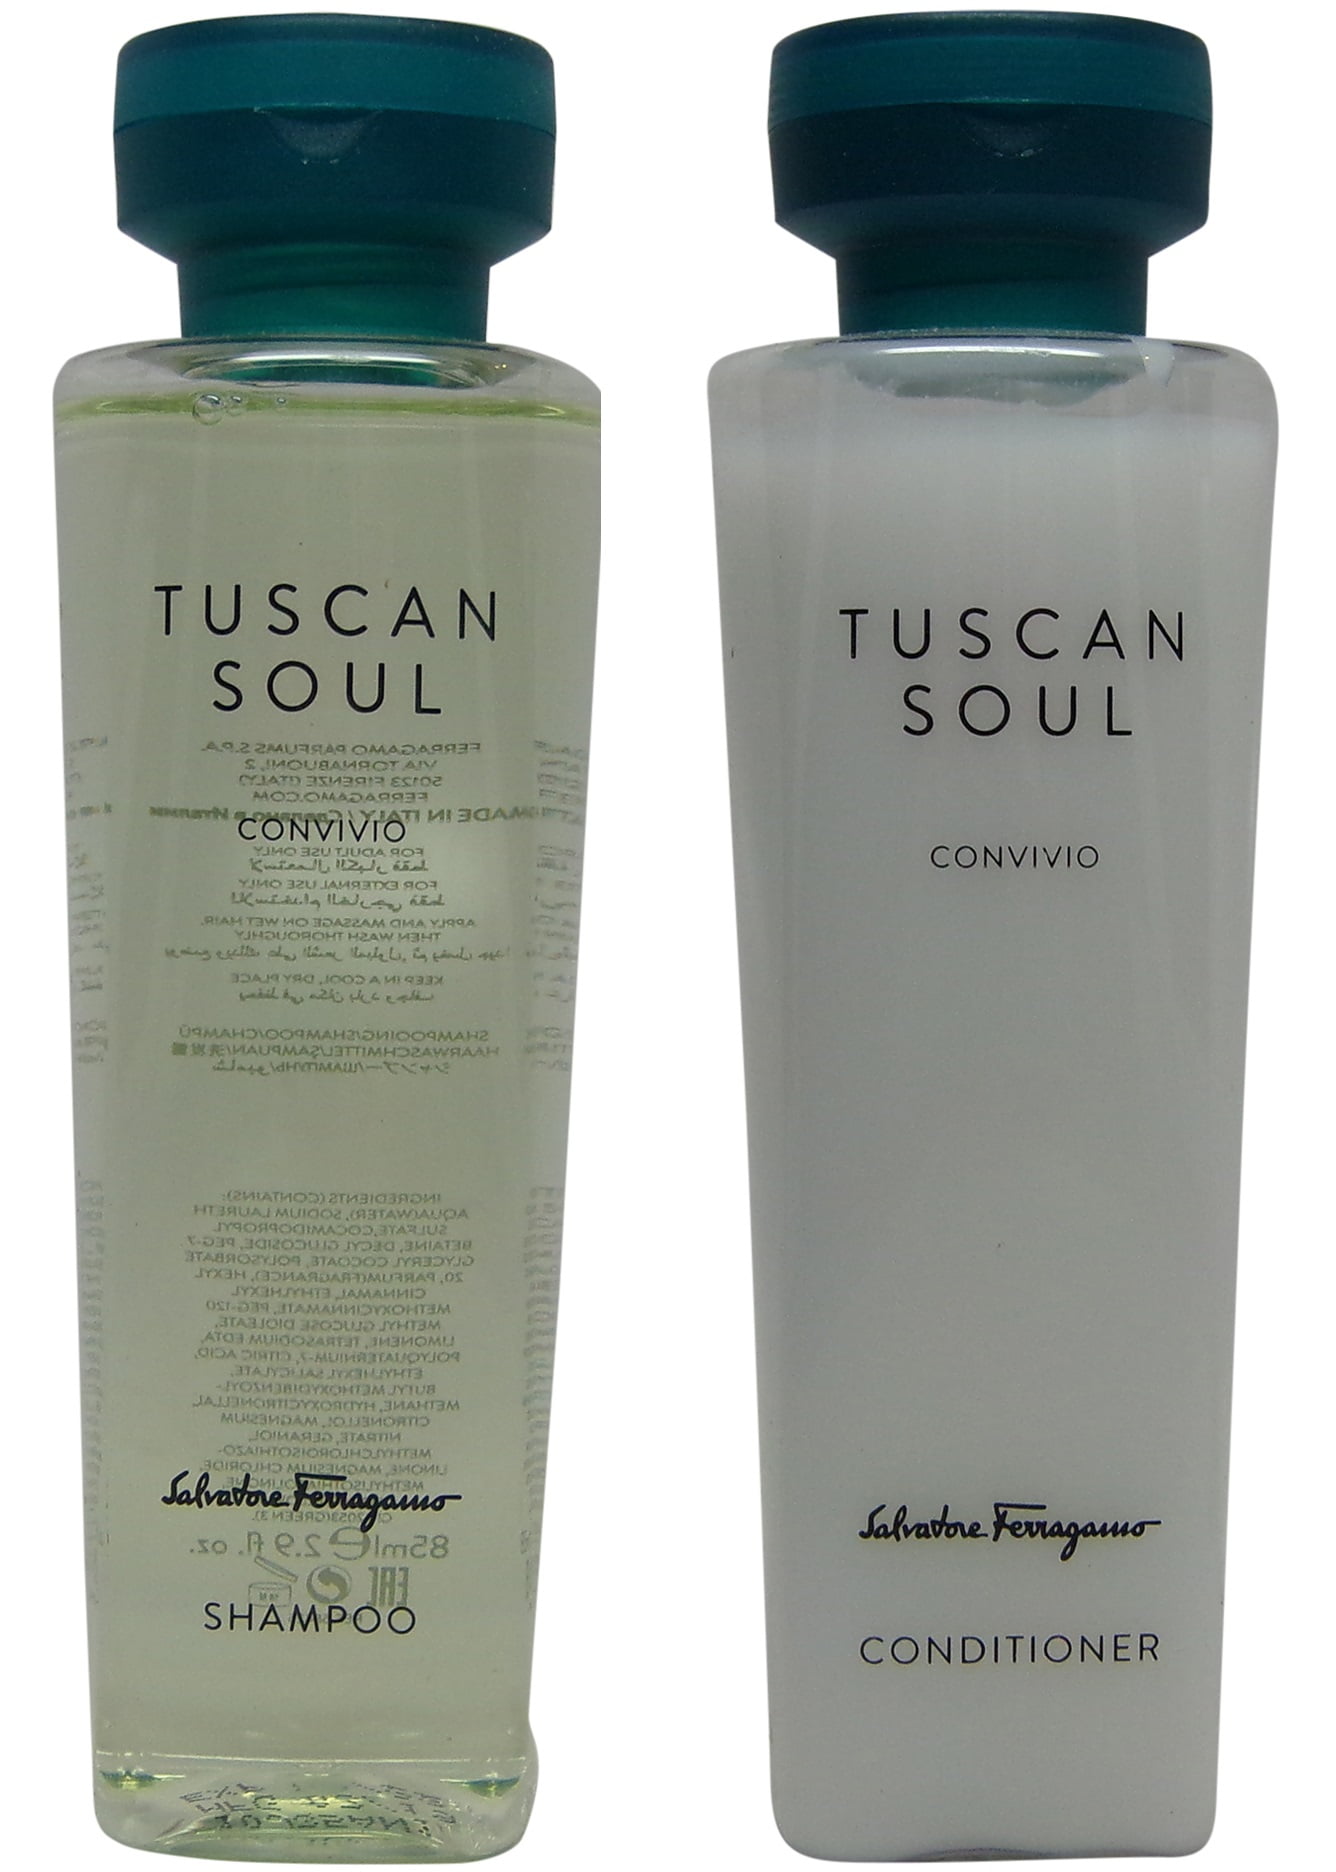 Salvatore Ferragamo Tuscan Soul Convivio Shampoo and Conditioner lot of 1  each 2.9oz bottles - Walmart.com